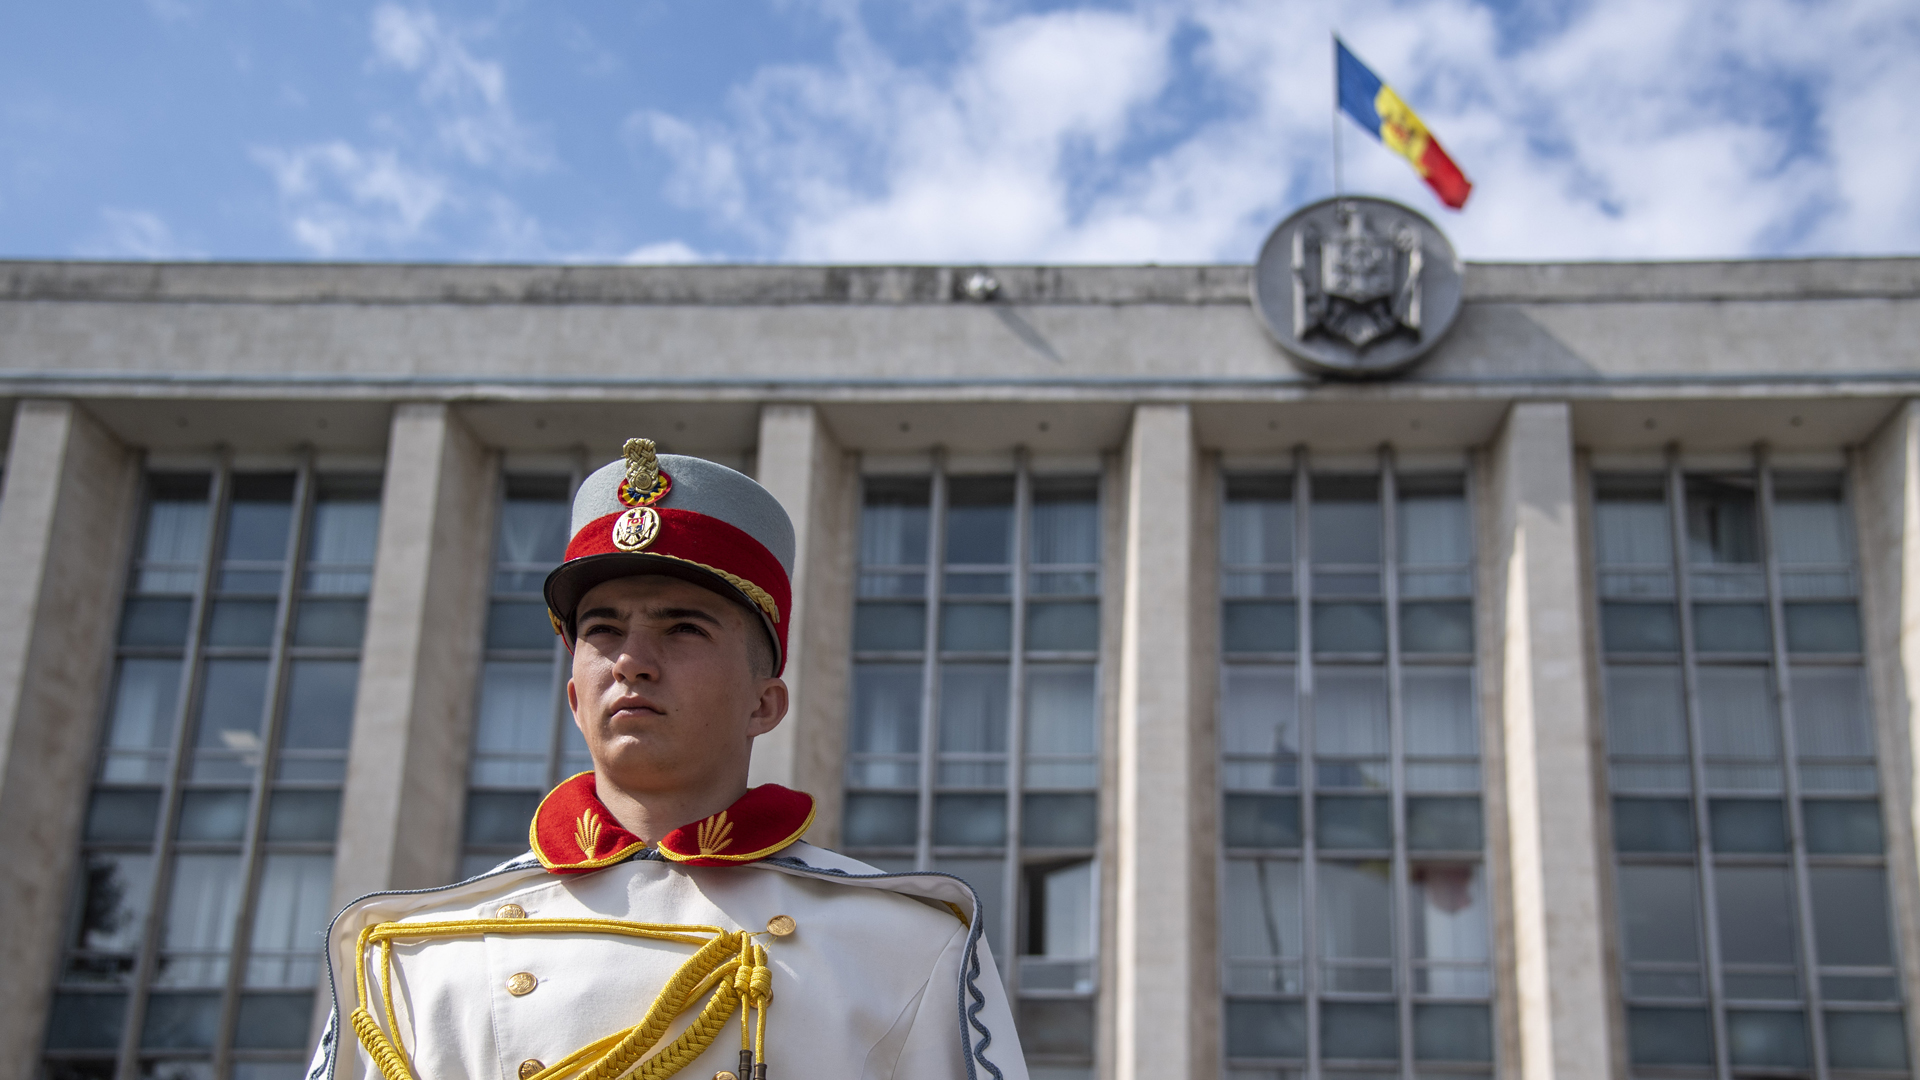 Ehrengardist der Republik Moldau vor dem Regierungspalast.